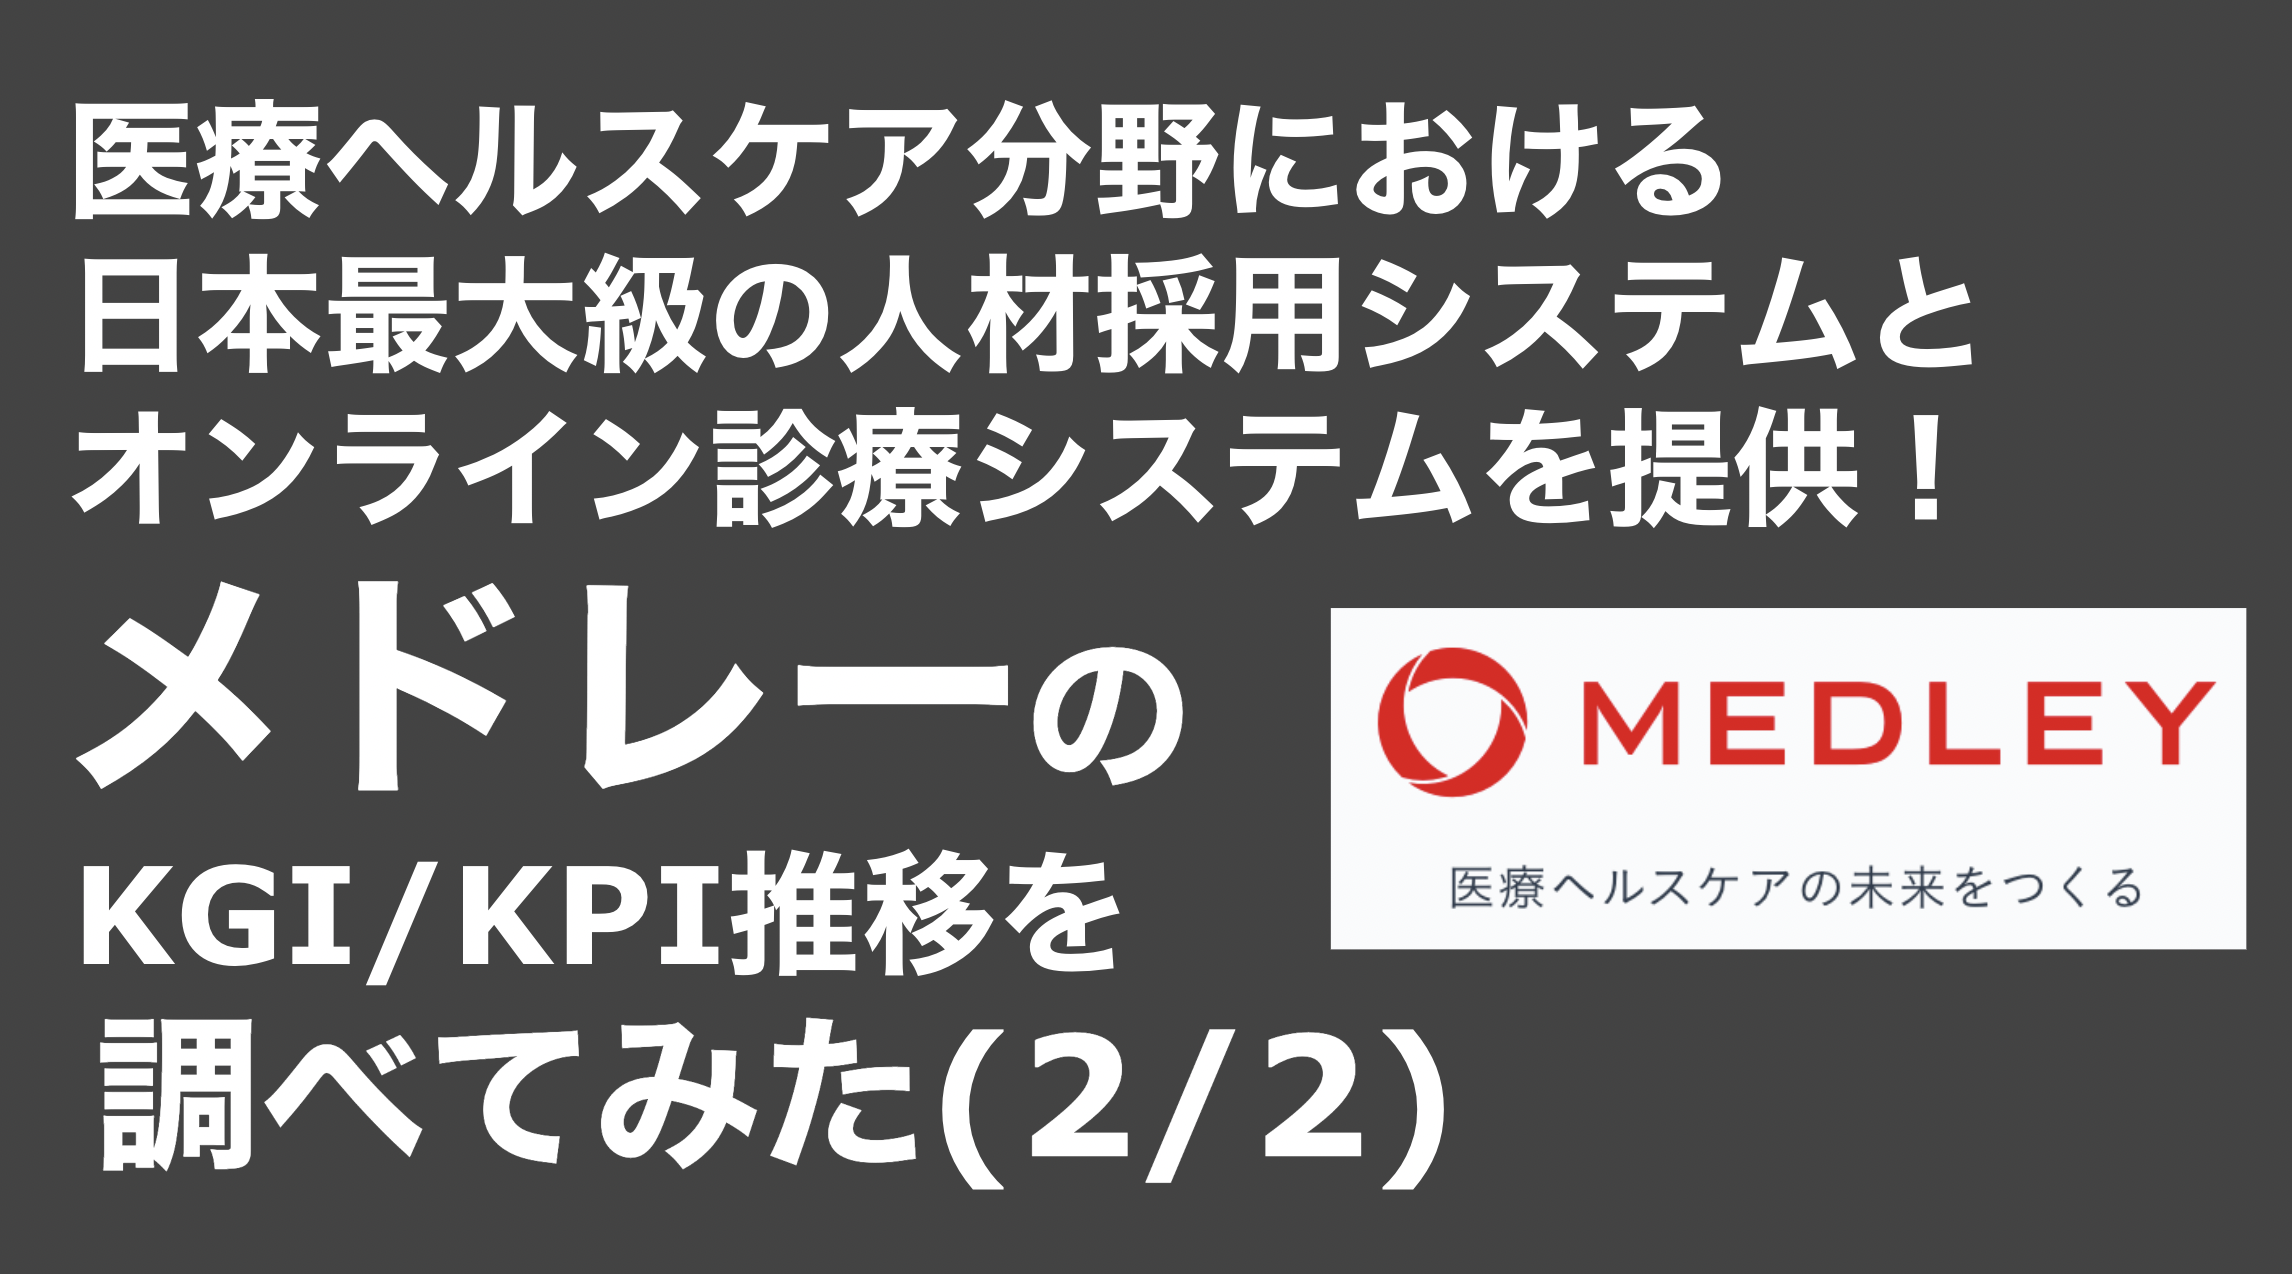 saaslife_医療ヘルスケア分野における日本最大級の人材採用システムとオンライン診療システムを提供！メドレーのKGI/KPI推移を調べてみた(2/2)